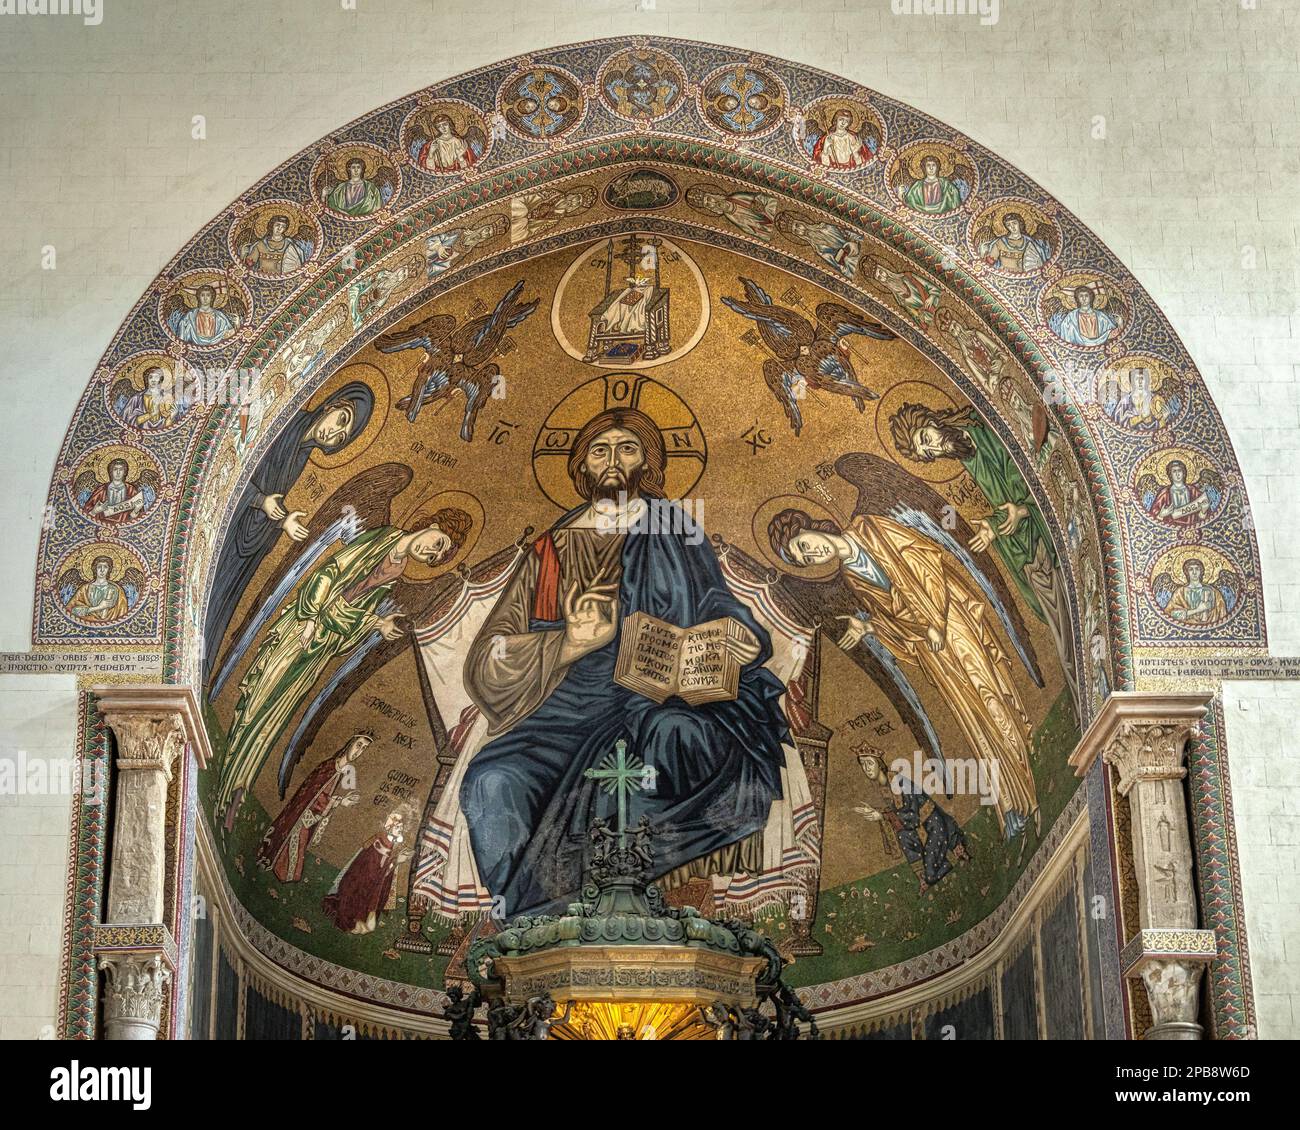 Cúpula bizantina del ábside detrás del altar mayor de la basílica de Santa María Assunta en Messina. Messina, Sicilia, Italia, Europa Foto de stock